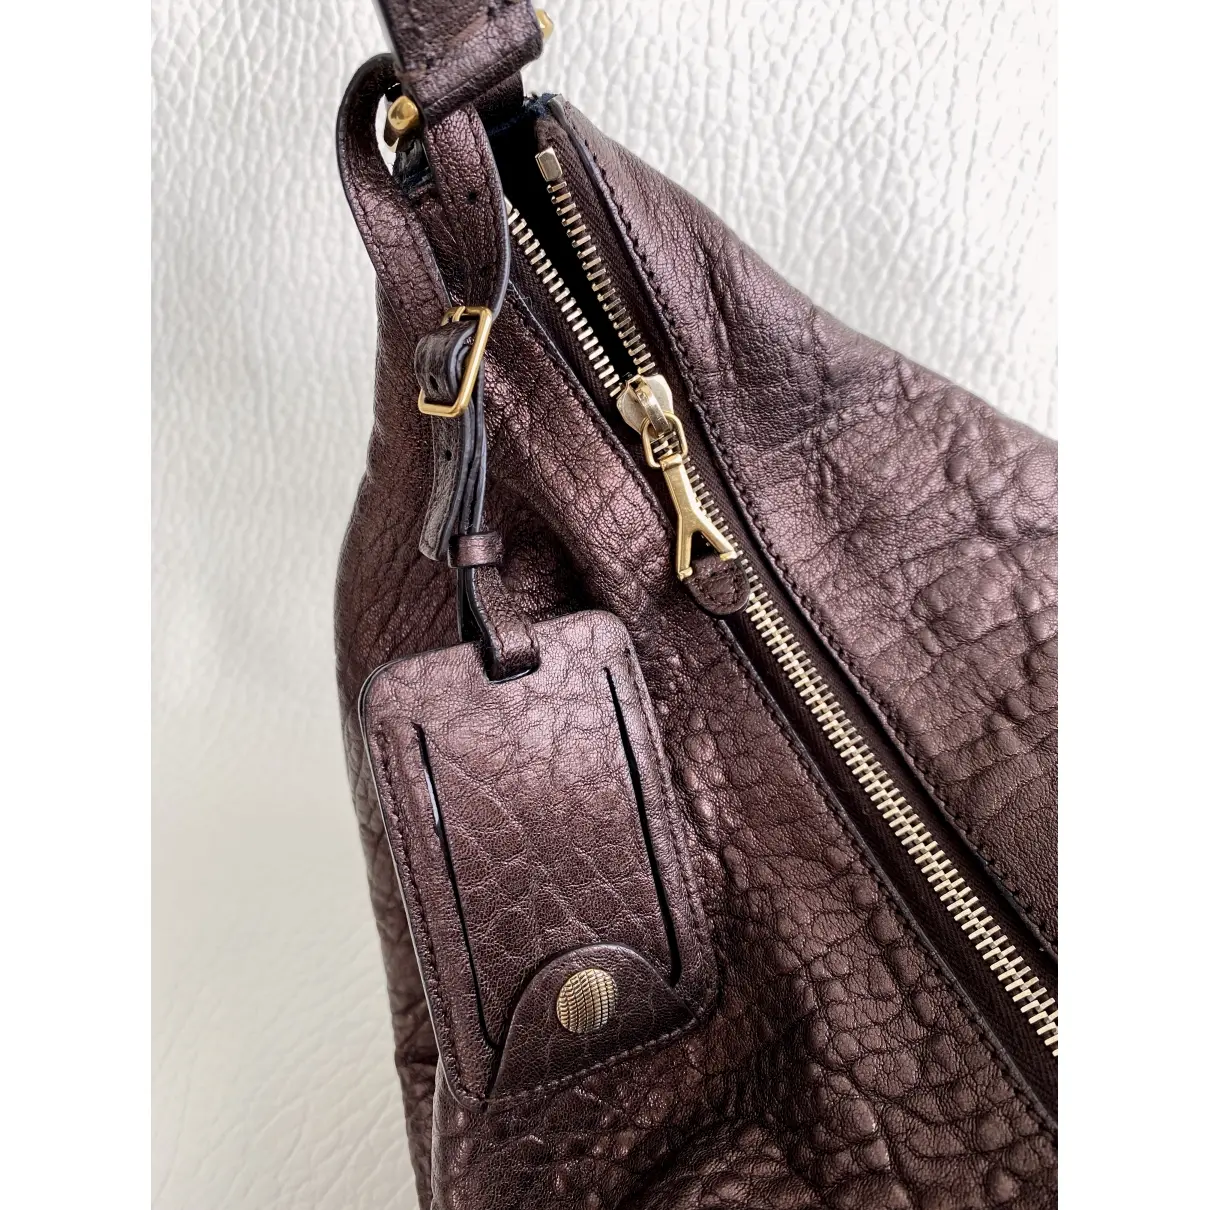 Buy Yves Saint Laurent Tribute leather handbag online